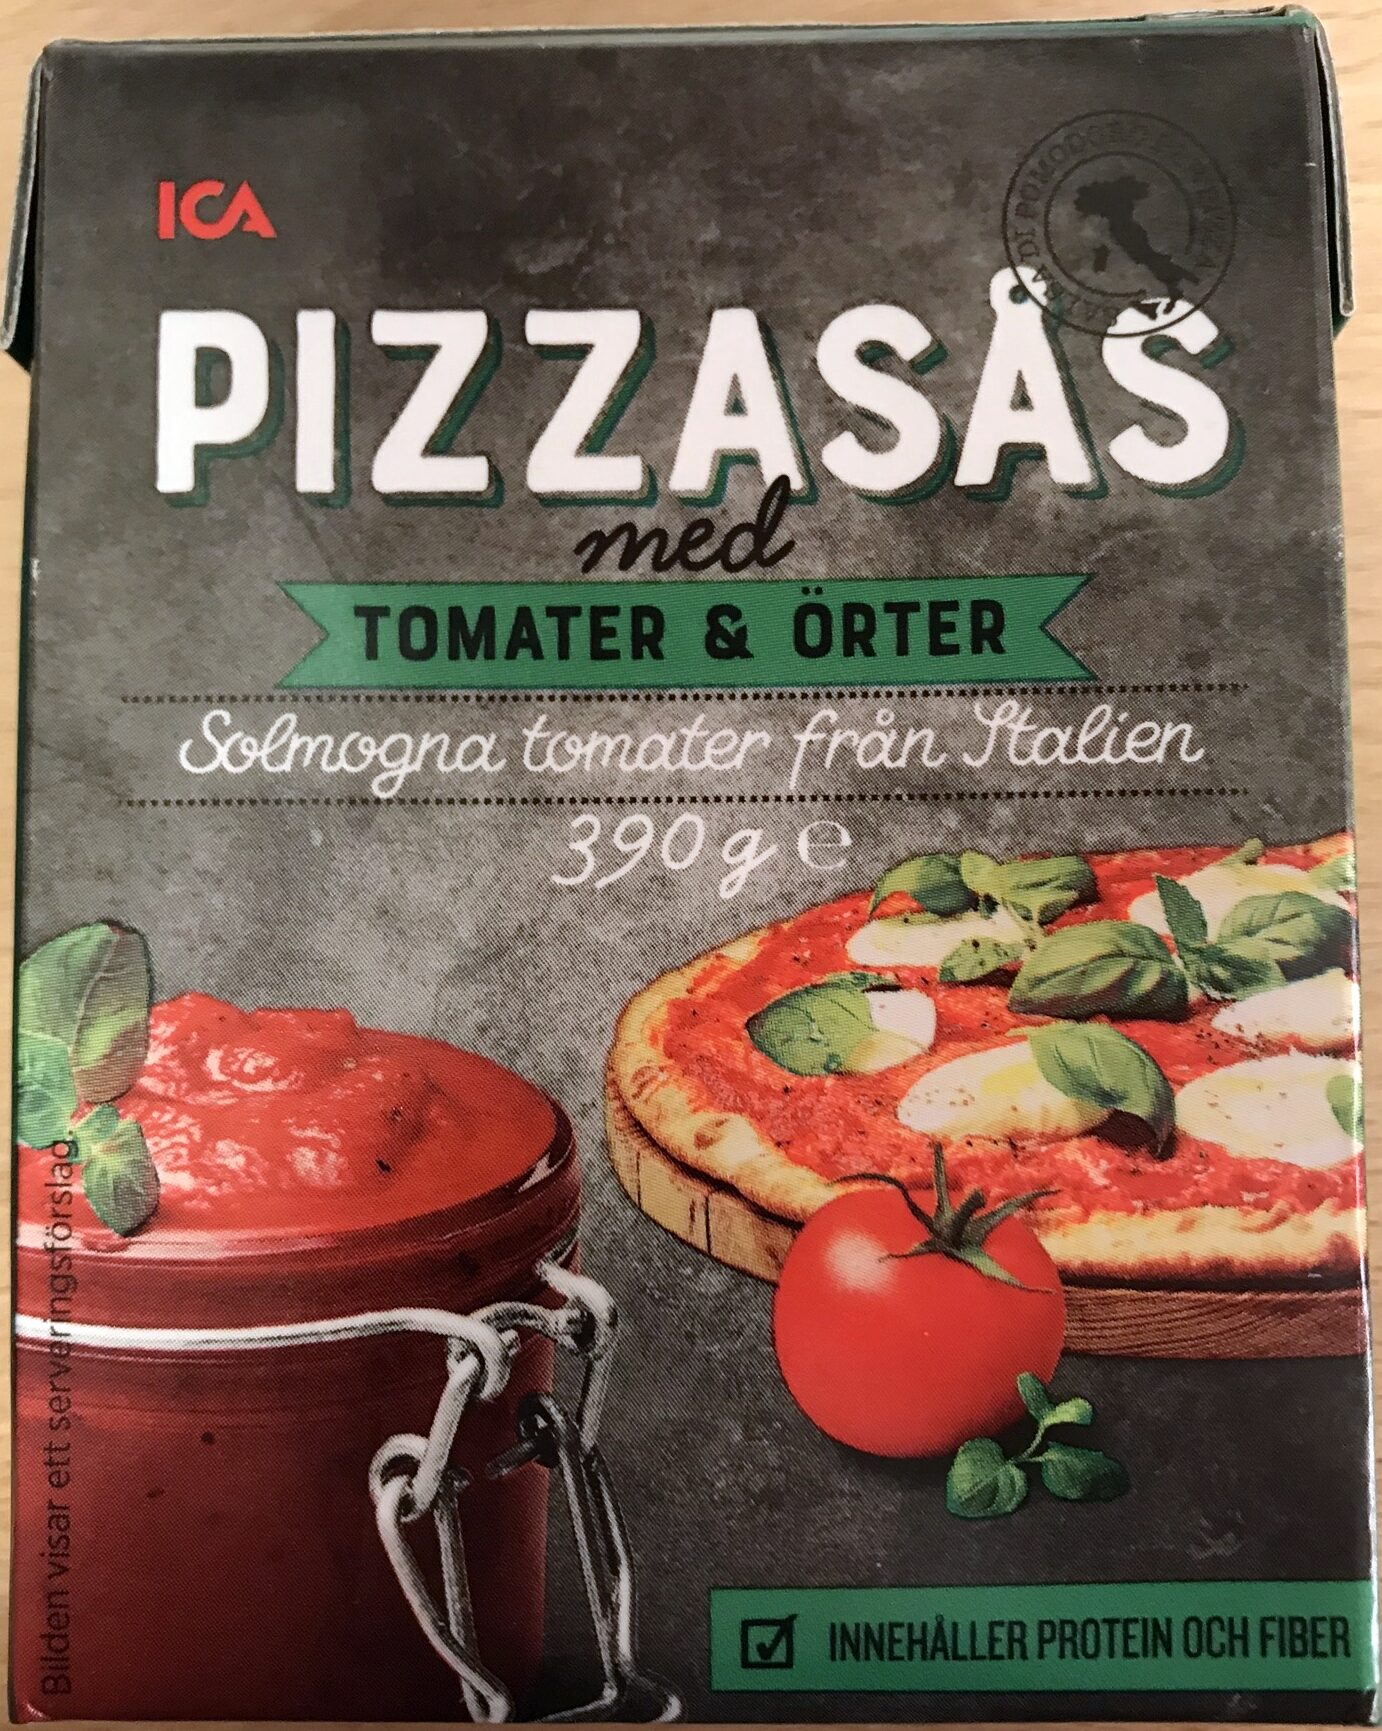 Pizzasås med Tomater & Örter - Produkt - sv